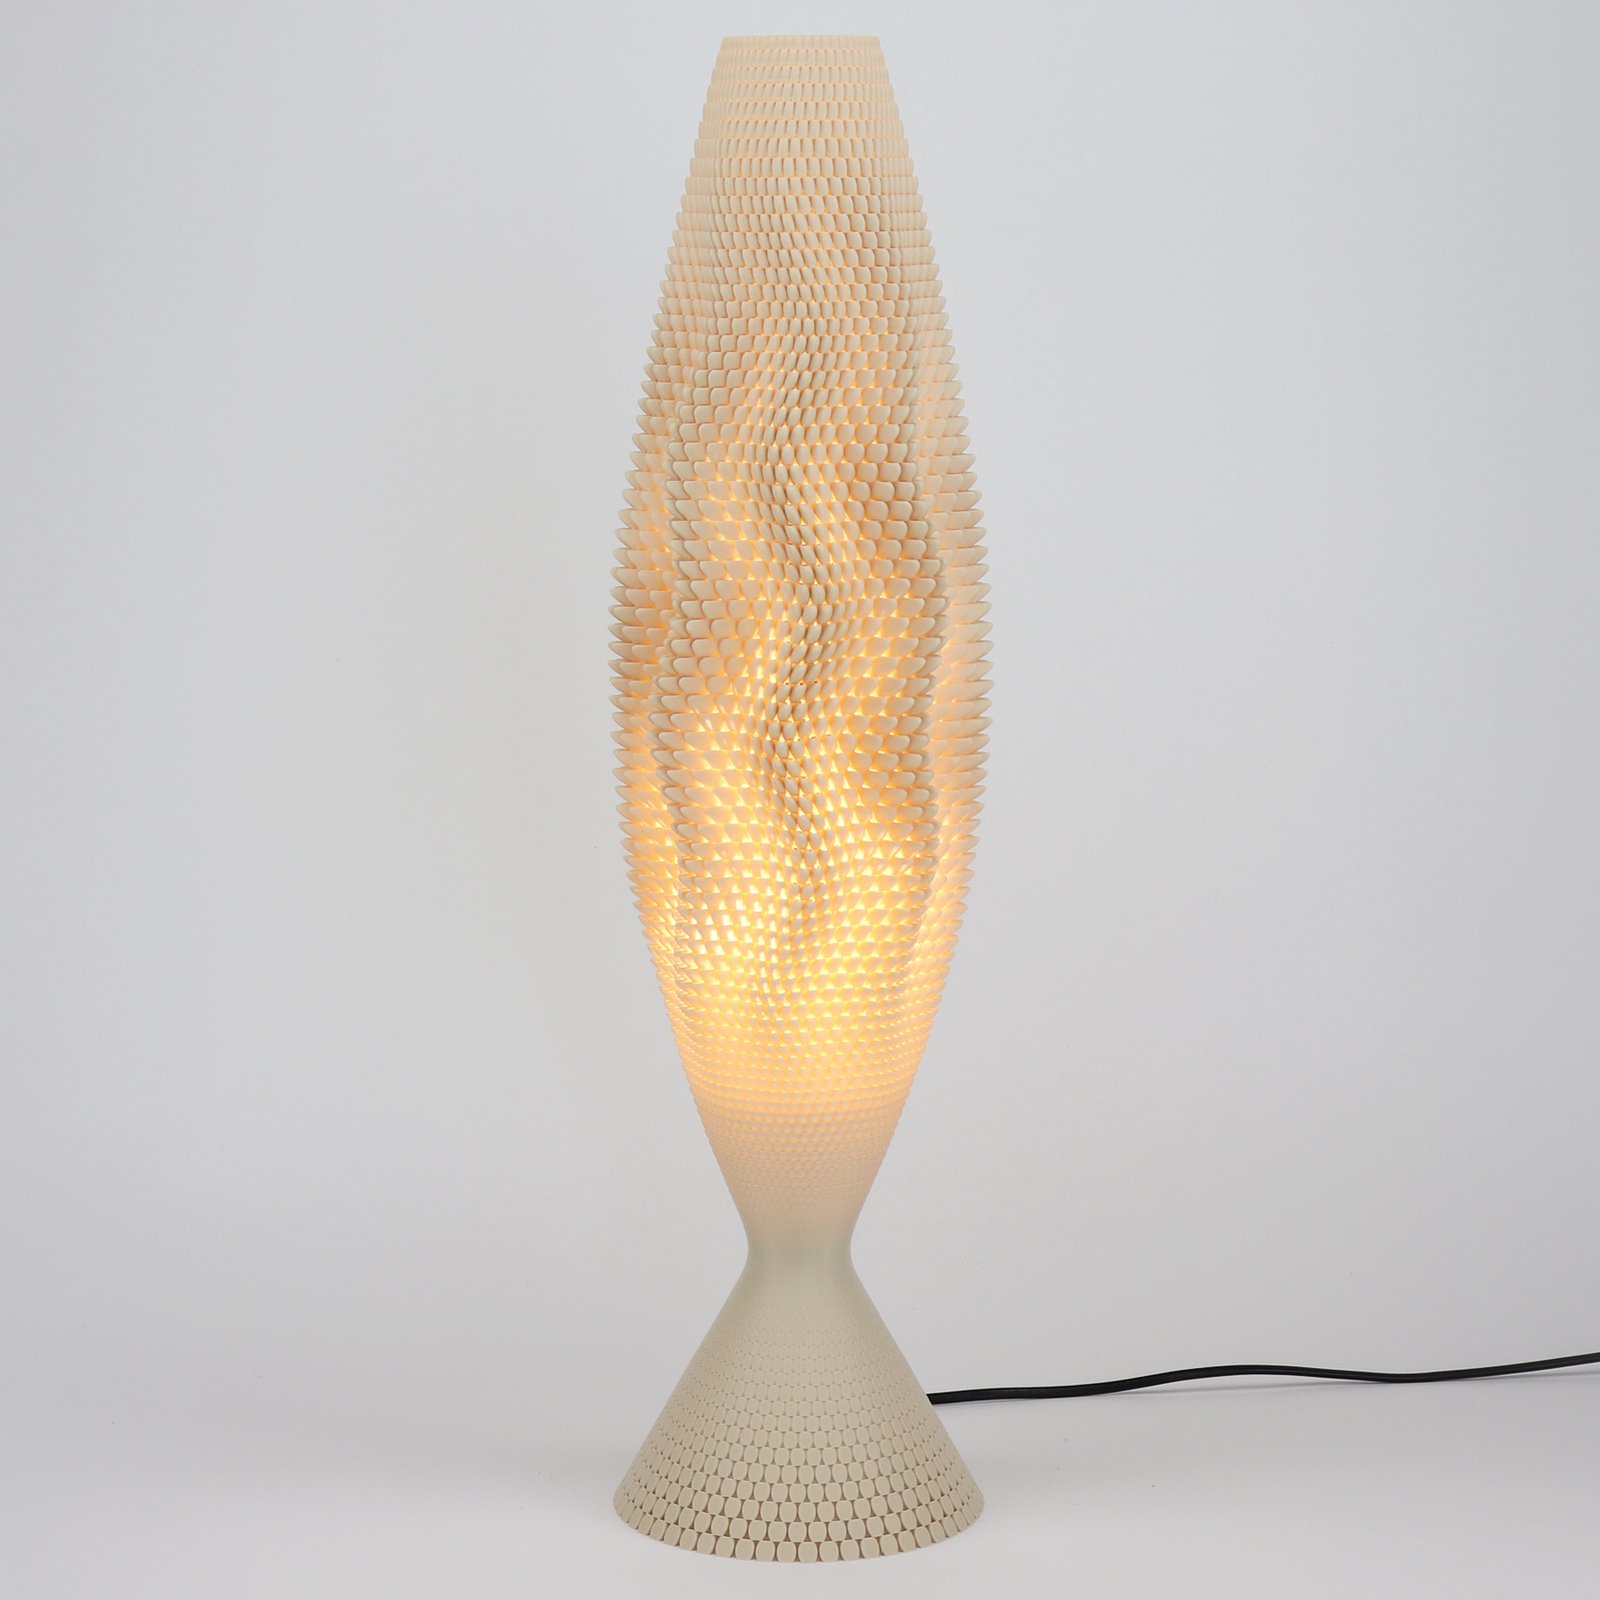 Lampa stołowa Koral wykonana z materiału organicznego, Lina, 65 cm